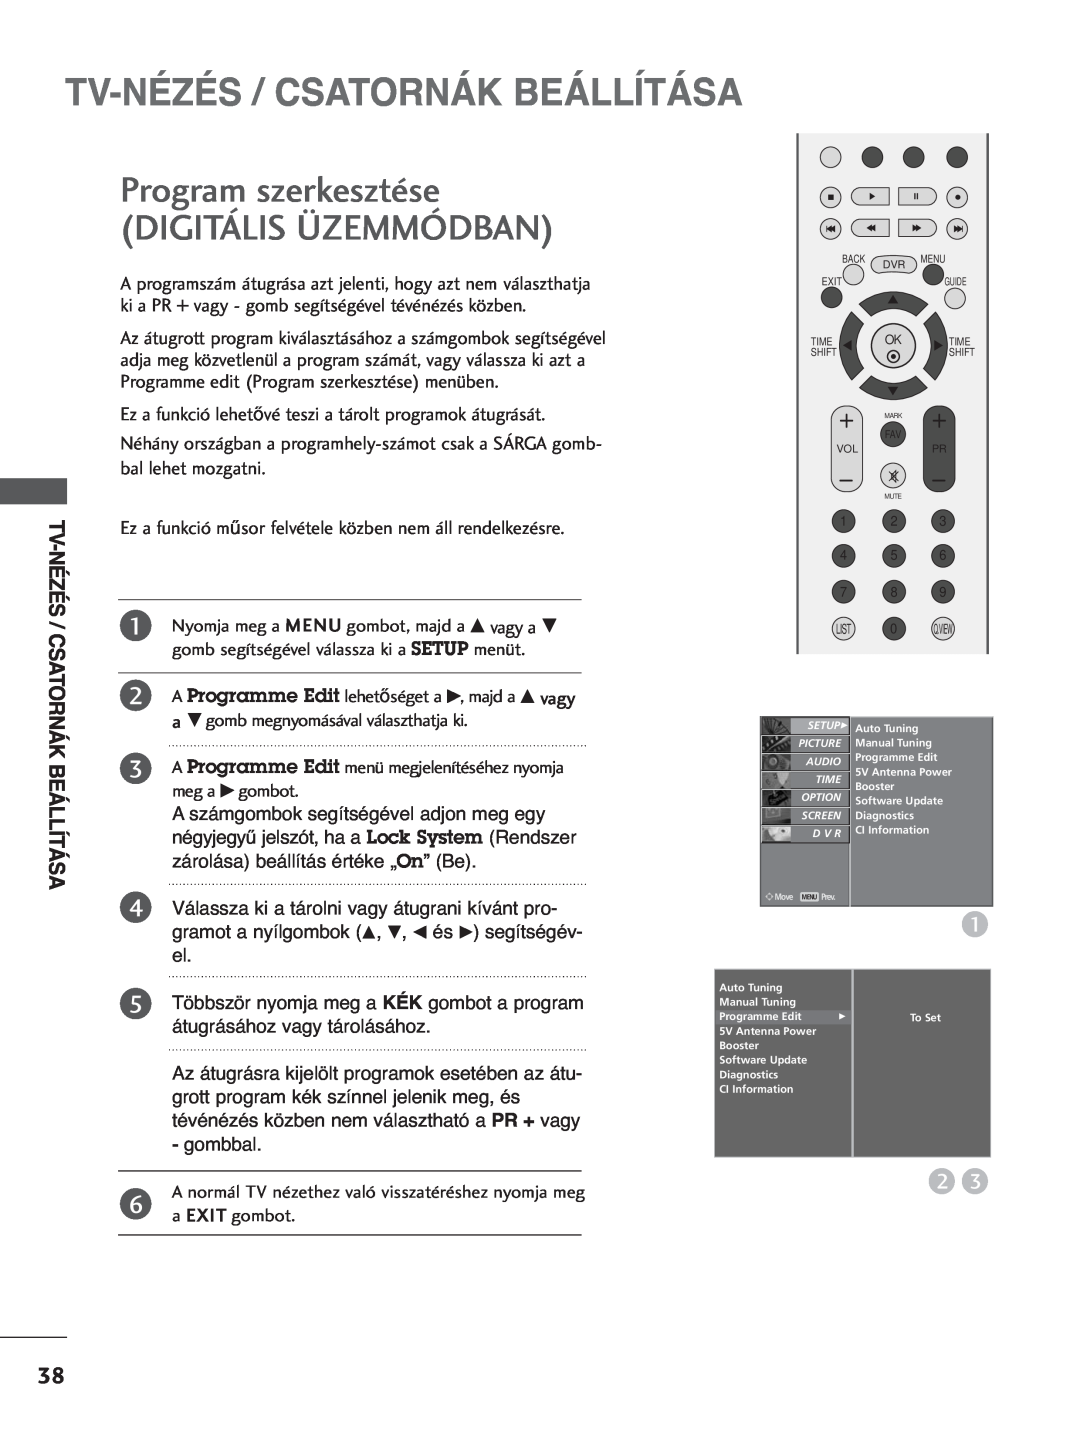 LG Electronics 3377LLTT77, 3322LLTT77 manual Program szerkesztése DIGITÁLIS ÜZEMMÓDBAN, Tv-Nézés / Csatornák Beállítása 